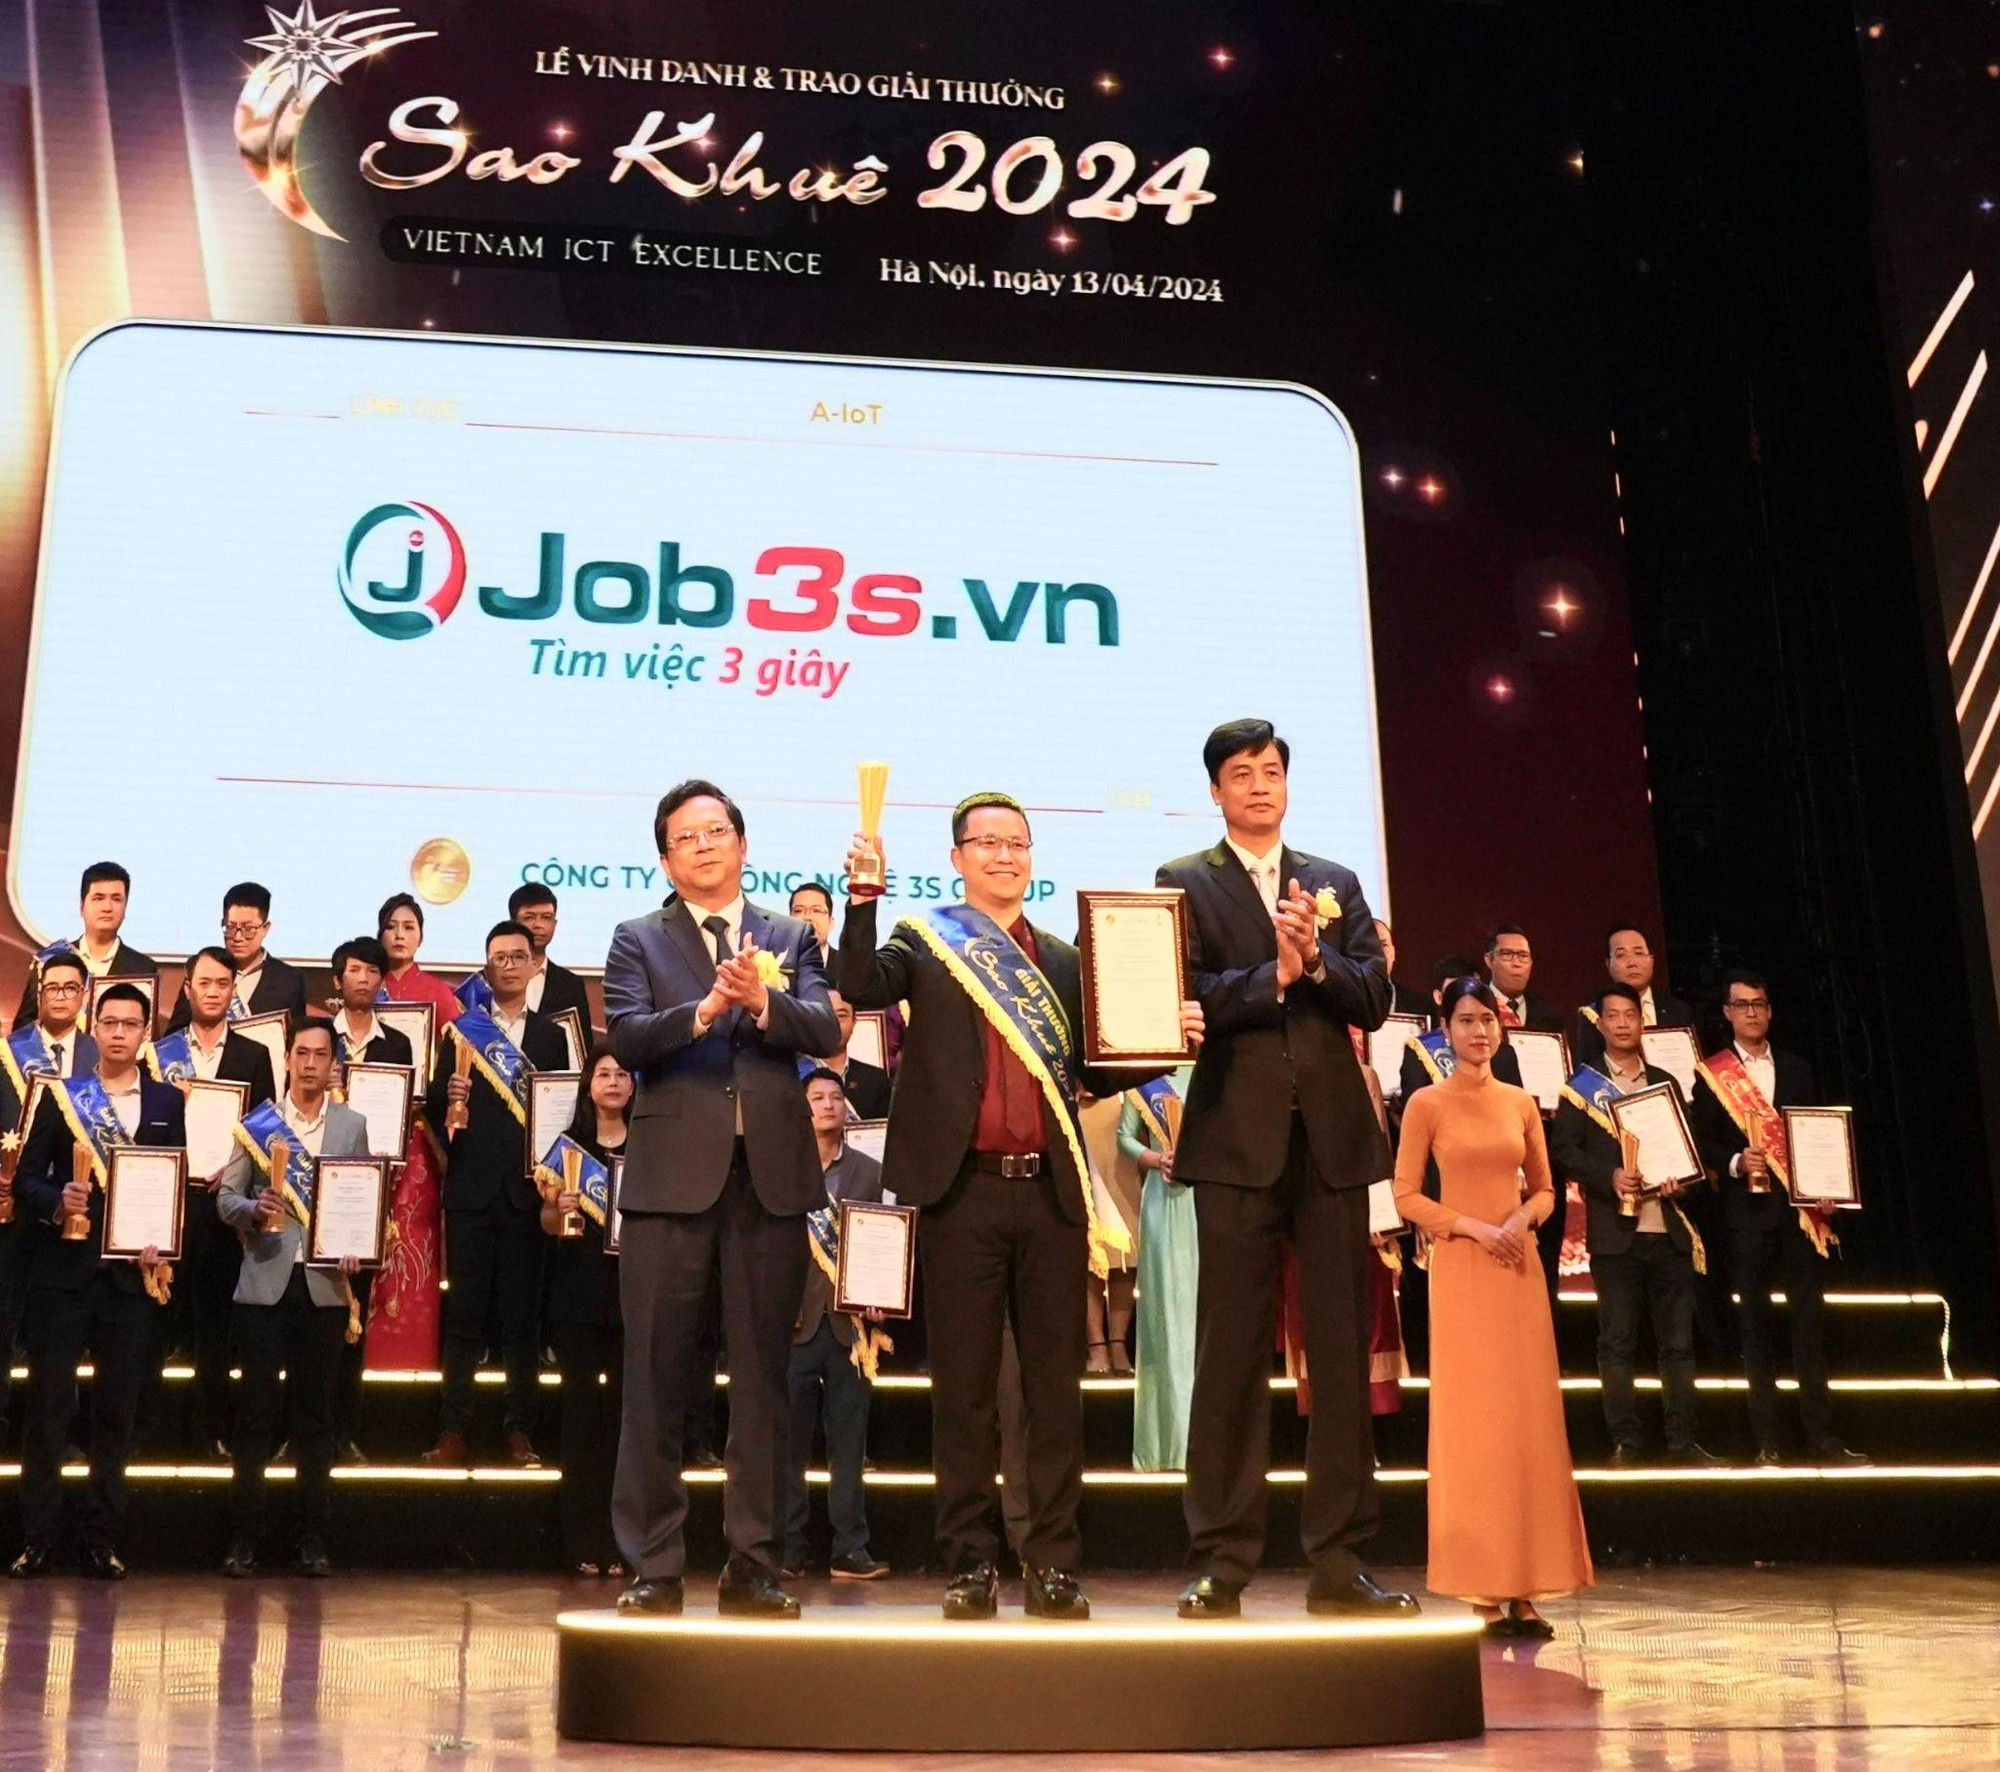 Ứng dụng hơn 20 loại AI vào tuyển dụng, Job3s.vn chính thức đạt Giải thưởng Sao Khuê 2024 ở hạng mục A-IoT- Ảnh 1.